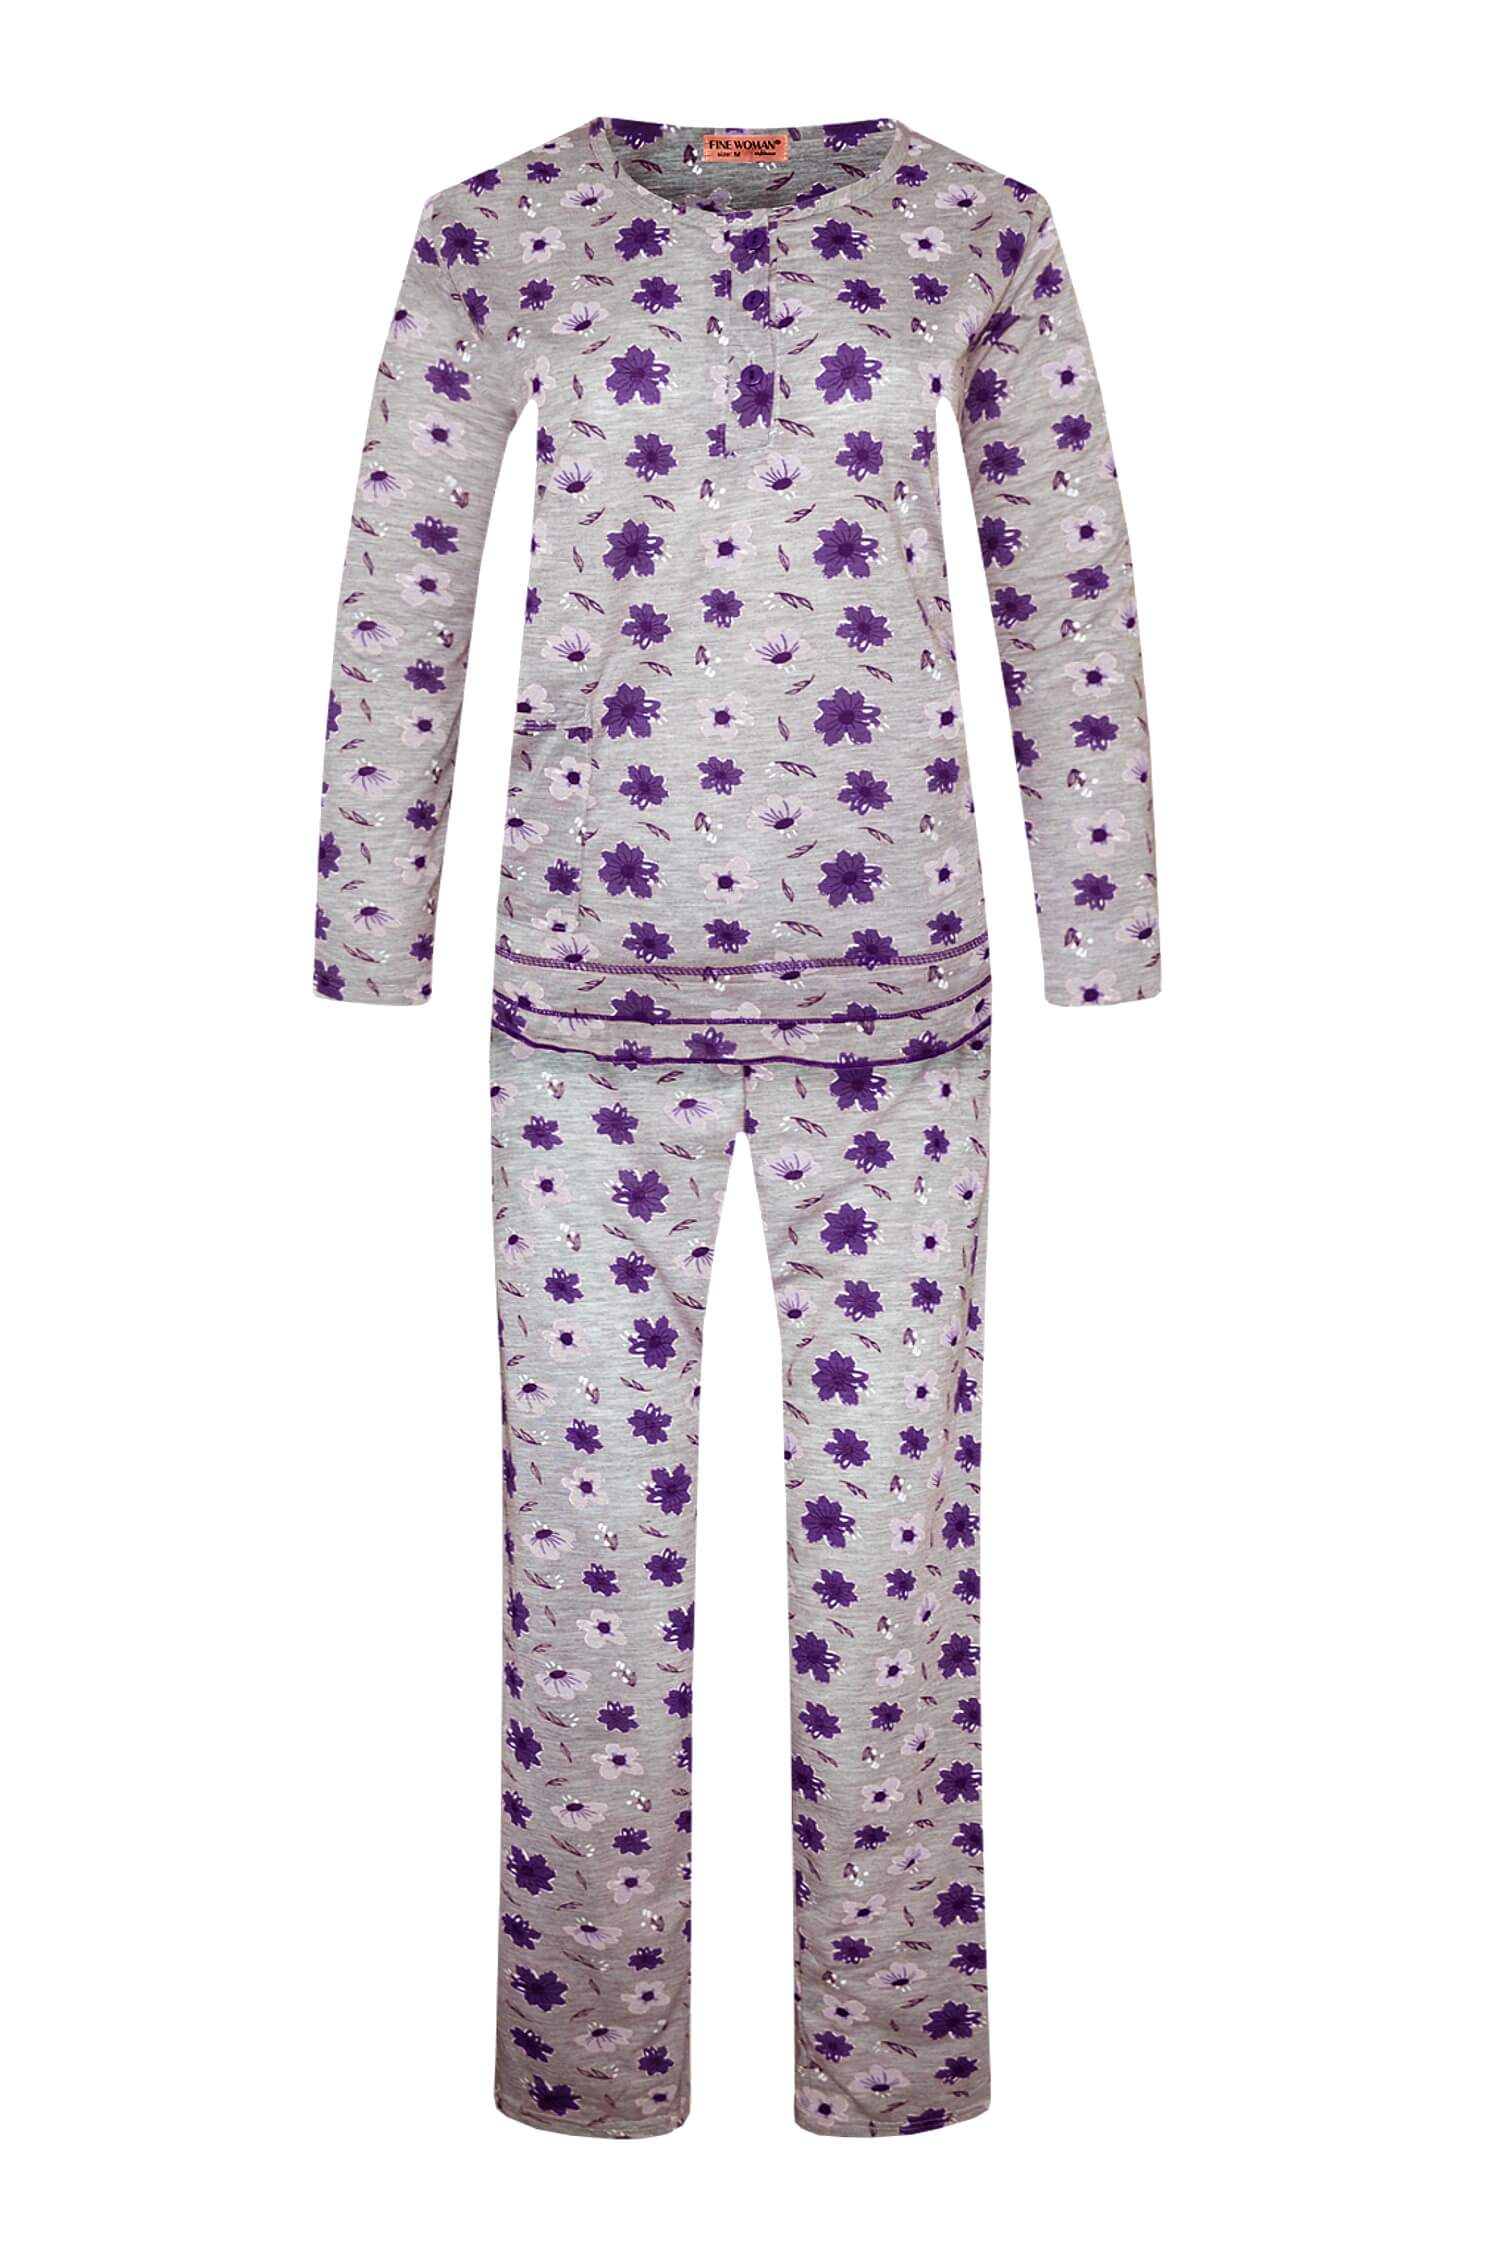 Arenda dámské dlouhé pyžamo 2297 XXL fialová